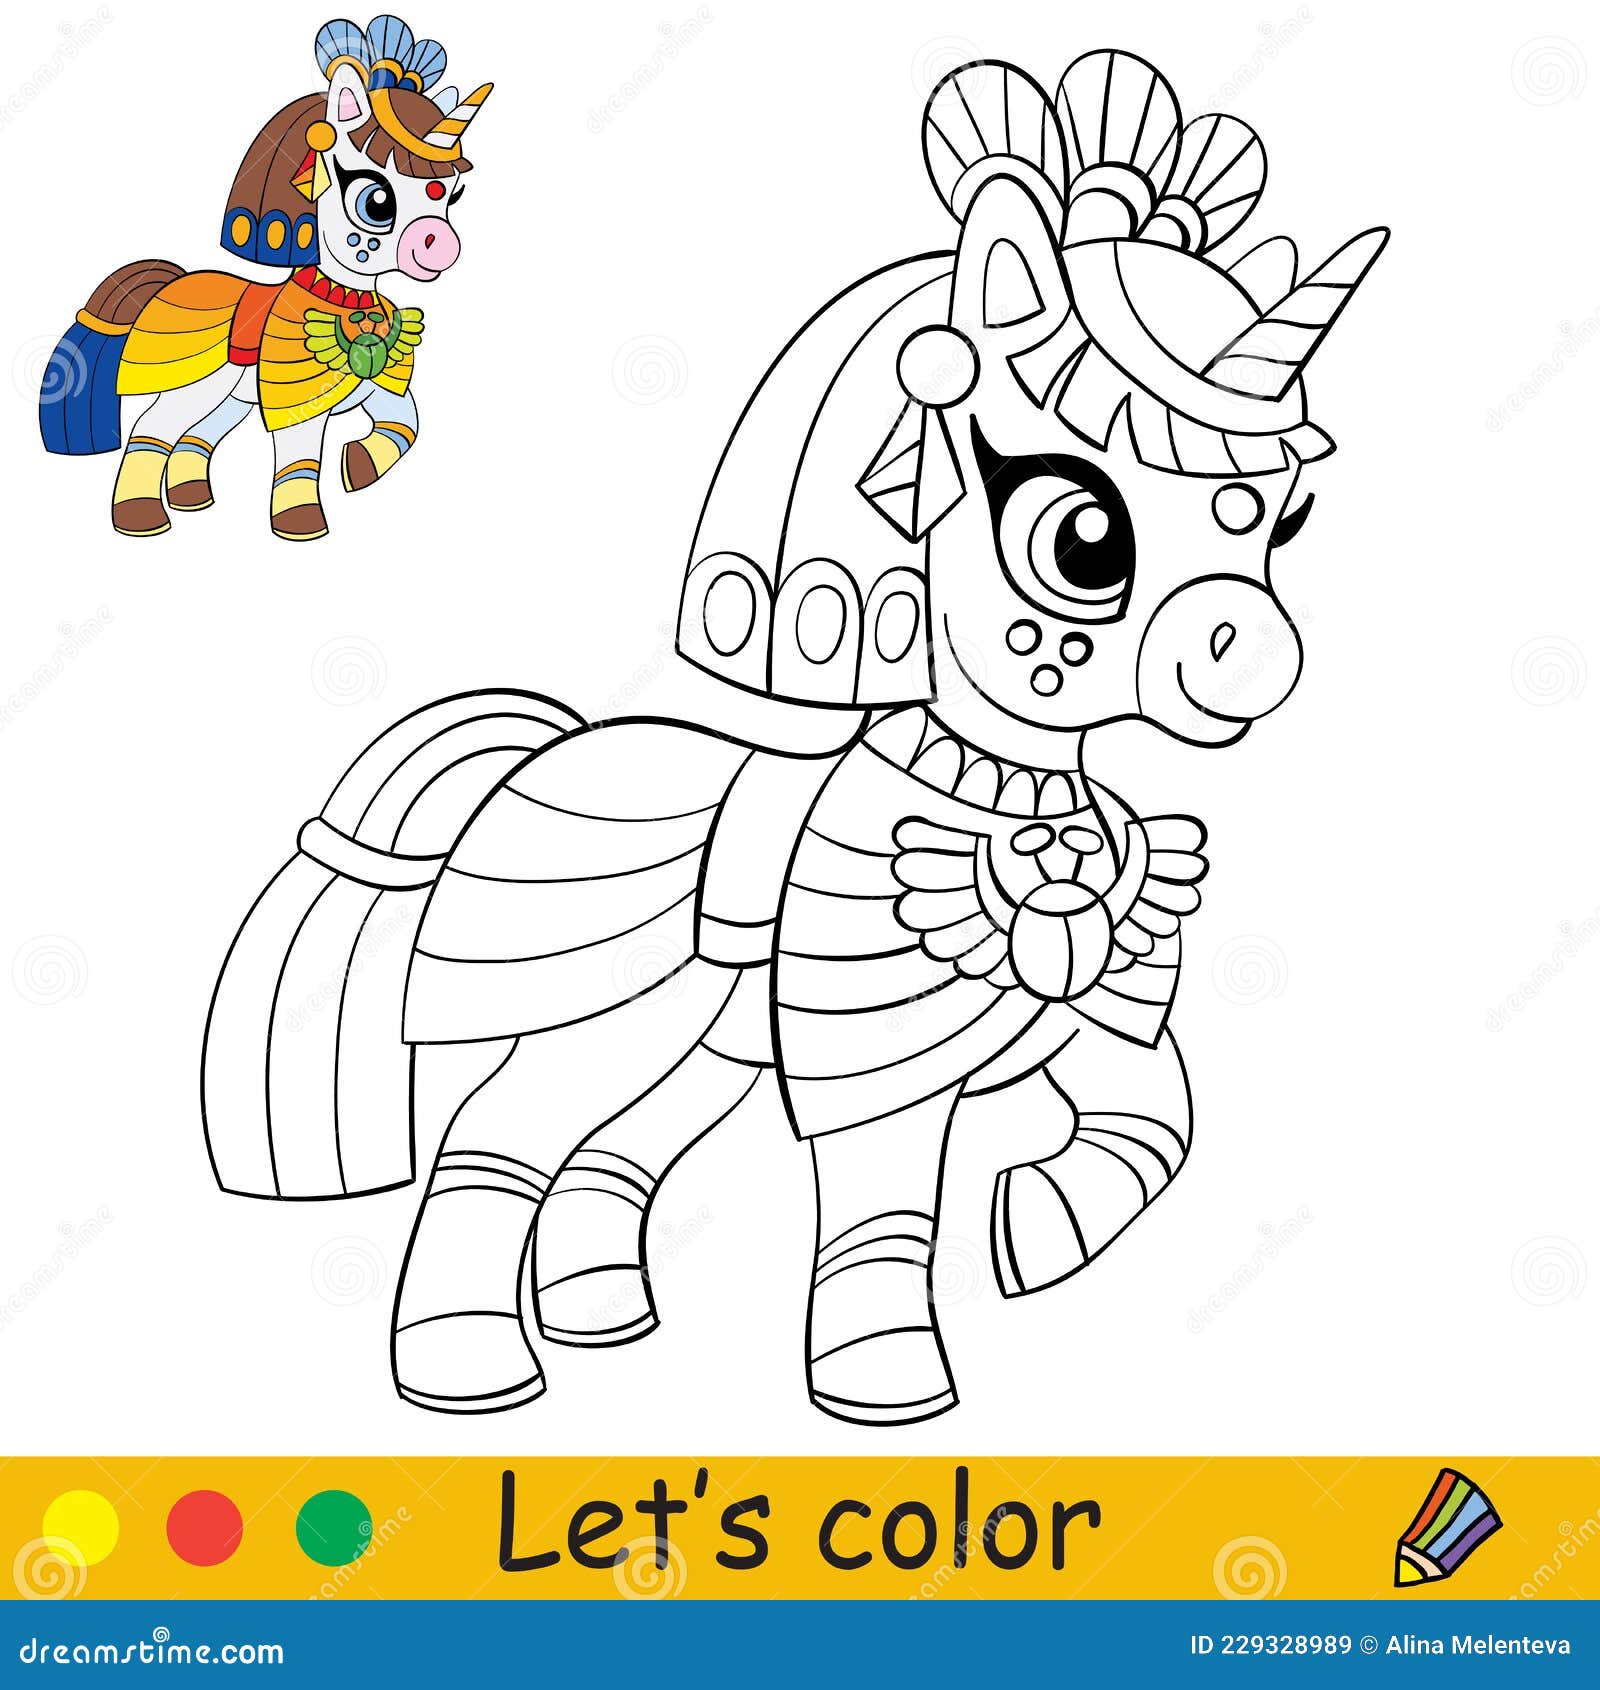 Immagini Stock - Pagina Da Colorare Di Unicorno Per Bambini